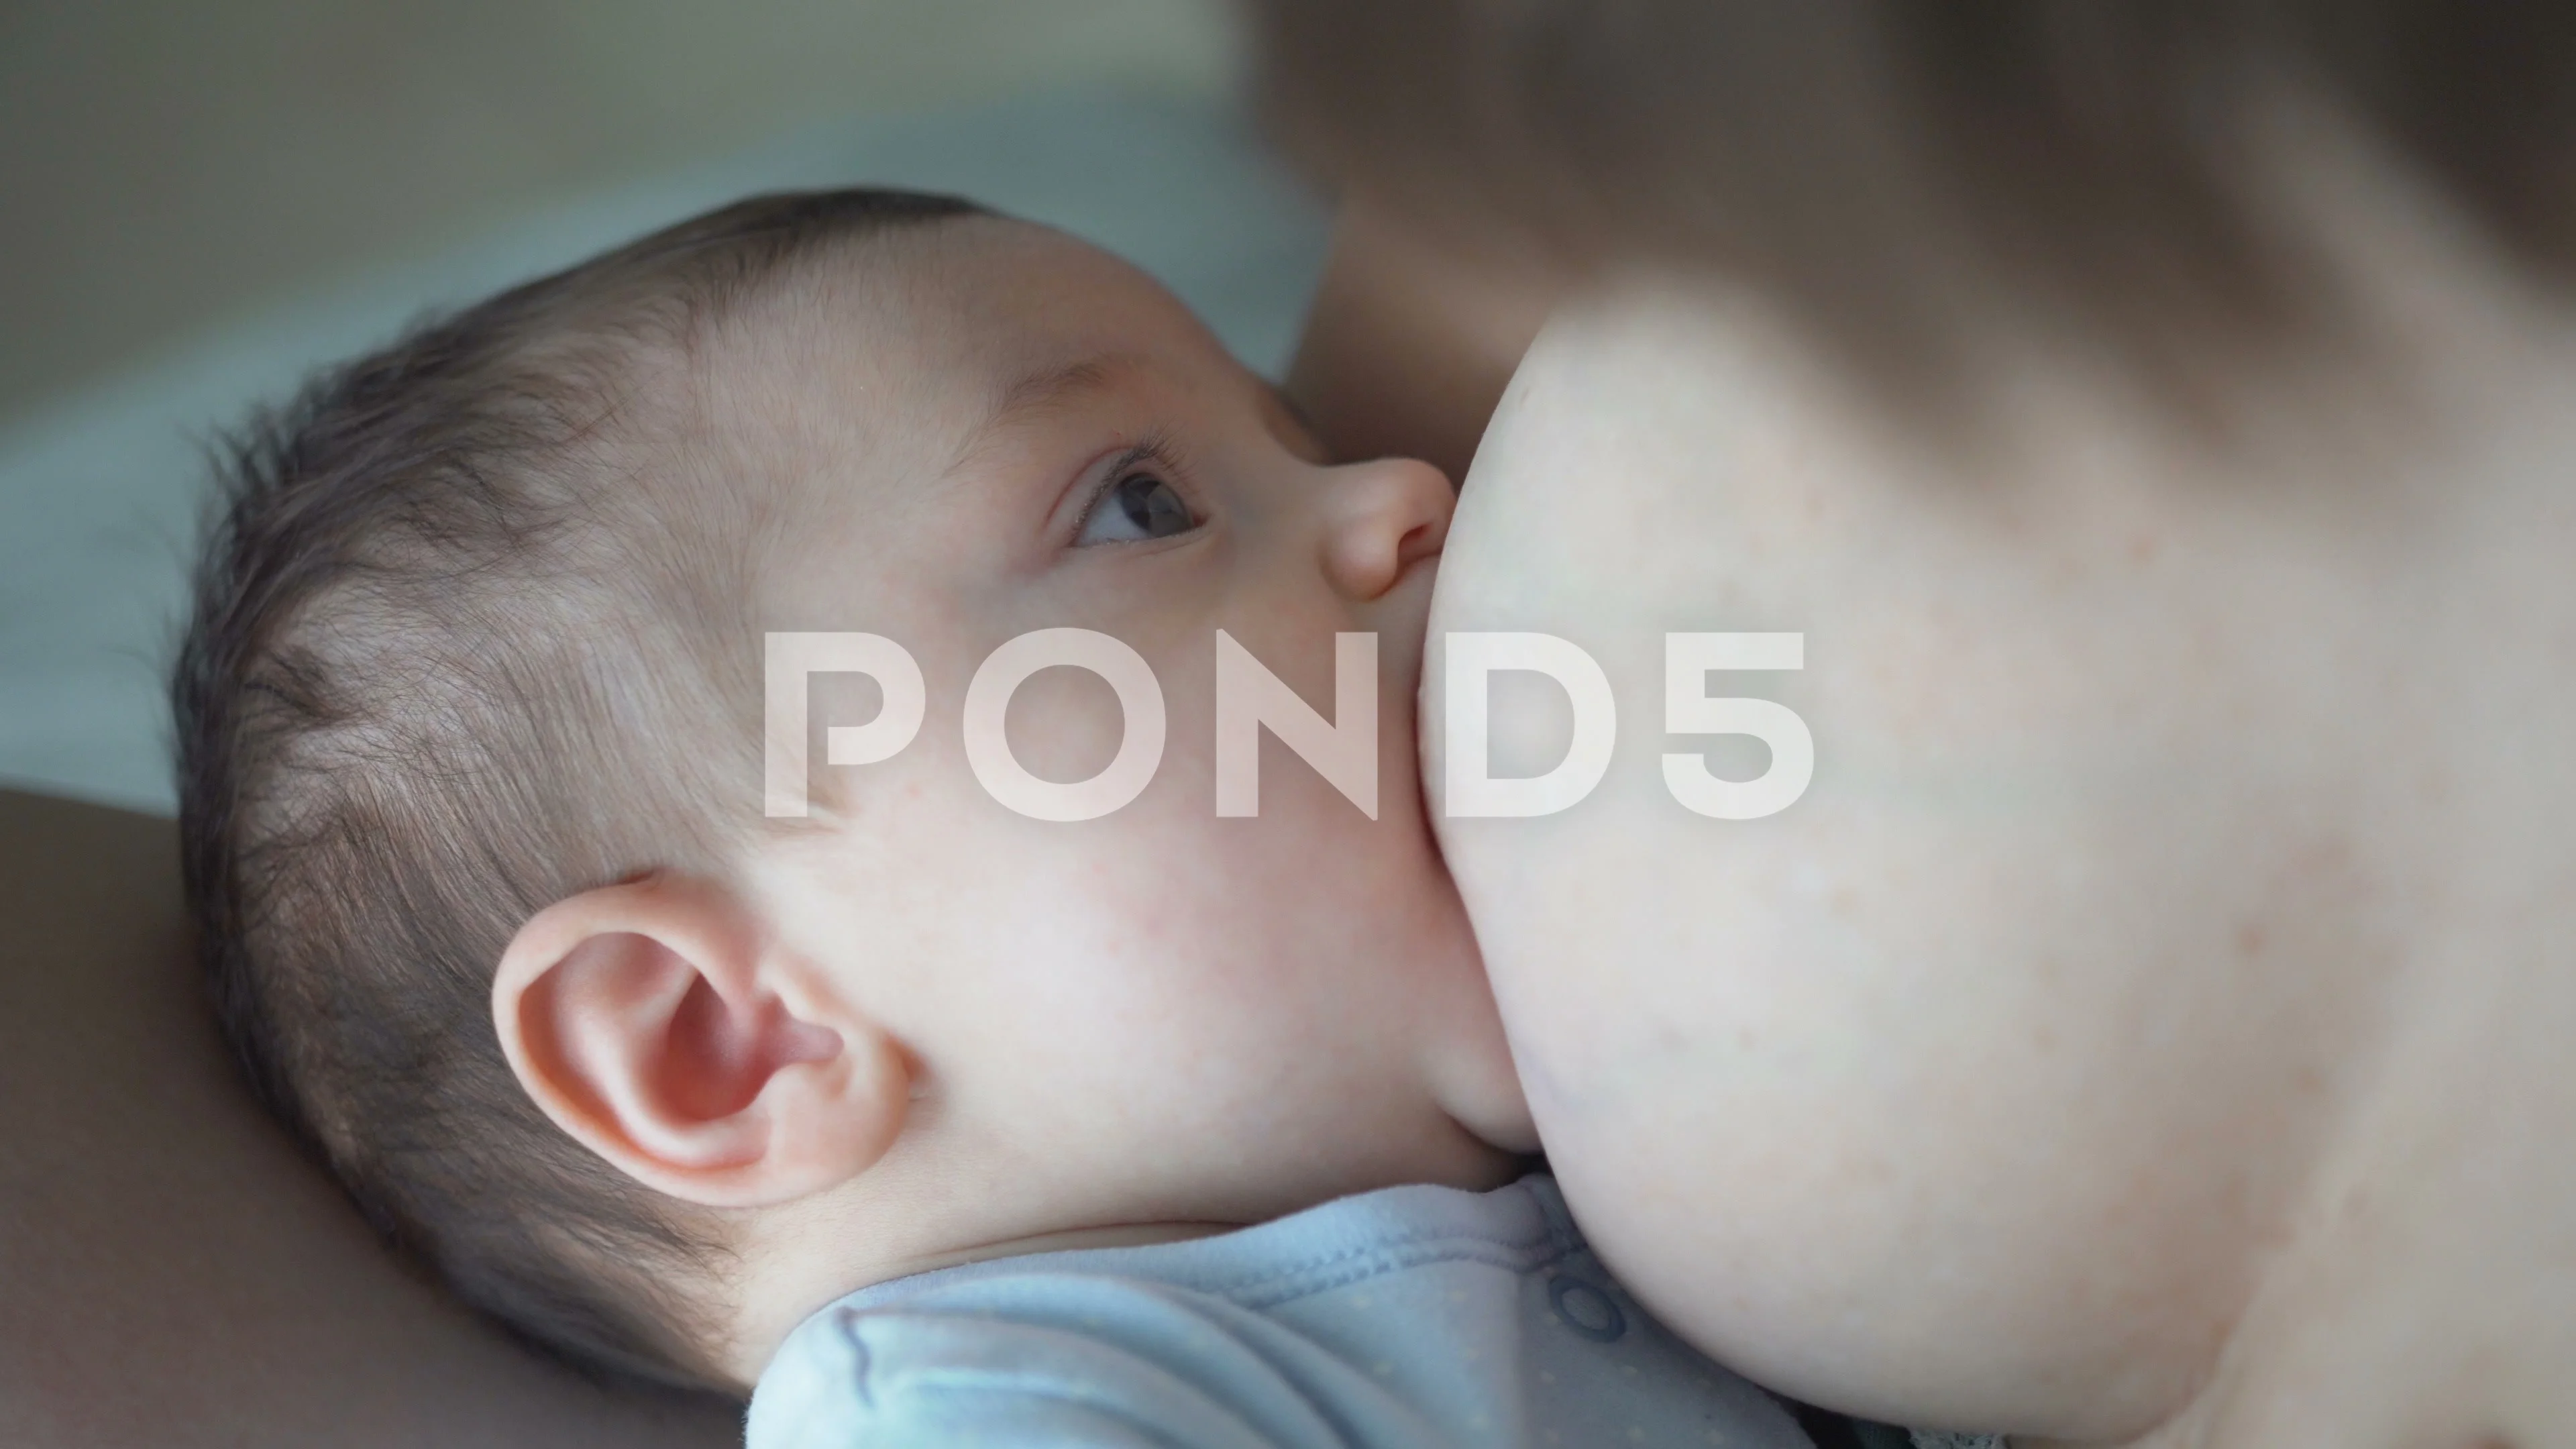 https://images.pond5.com/breast-feeding-breastfeeding-concept-happy-footage-106270804_prevstill.jpeg